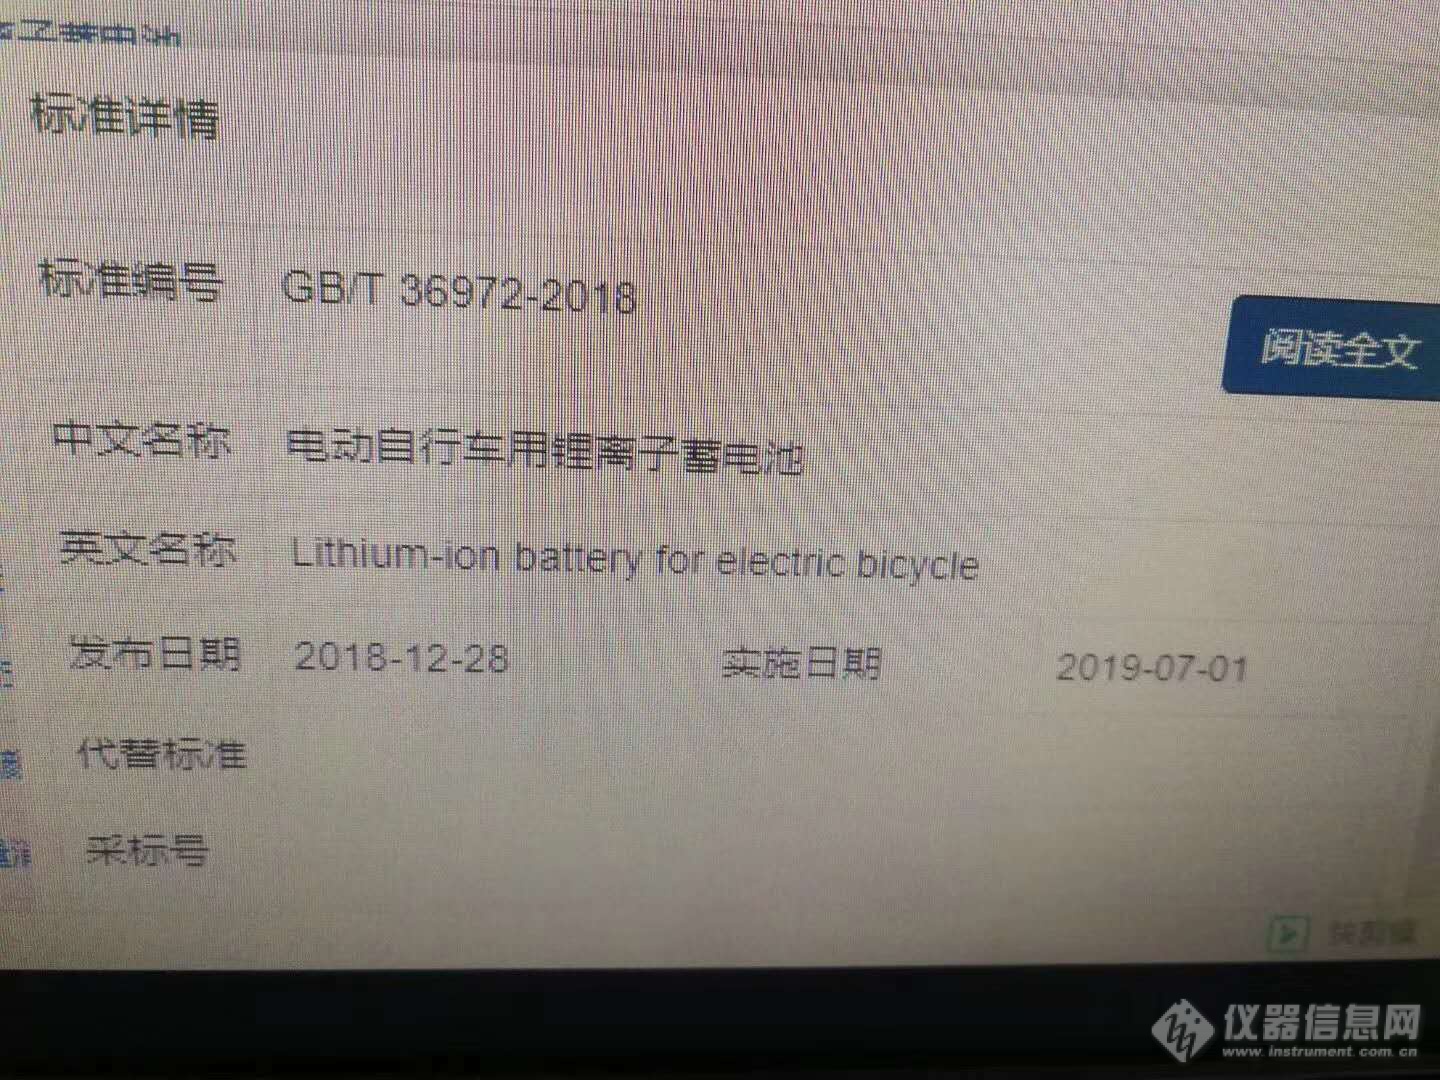 GB/T 36972-2018《电动自行车用锂离子蓄电池》将于2019年07月01日正式实施